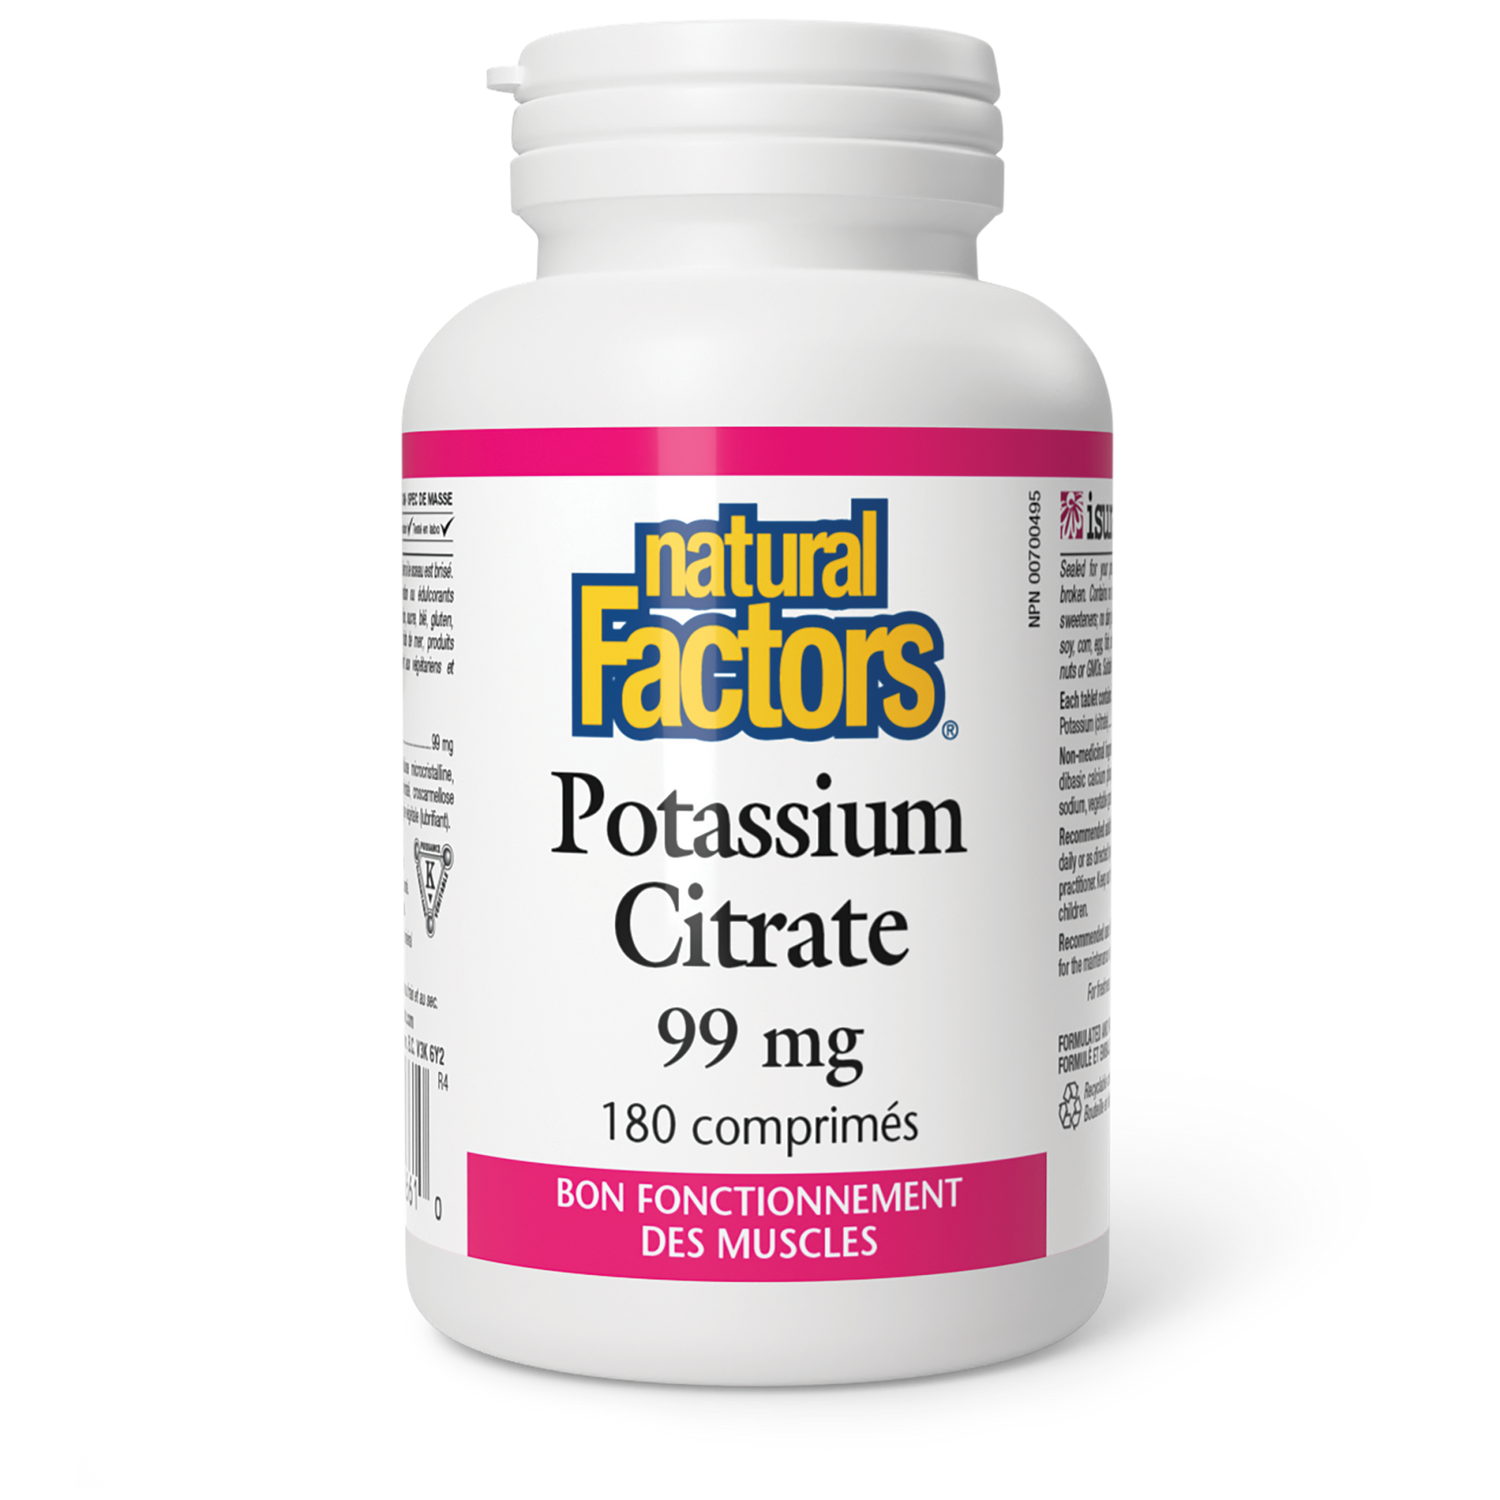 Potassium Citrate 99 mg, Natural Factors|v|image|1661